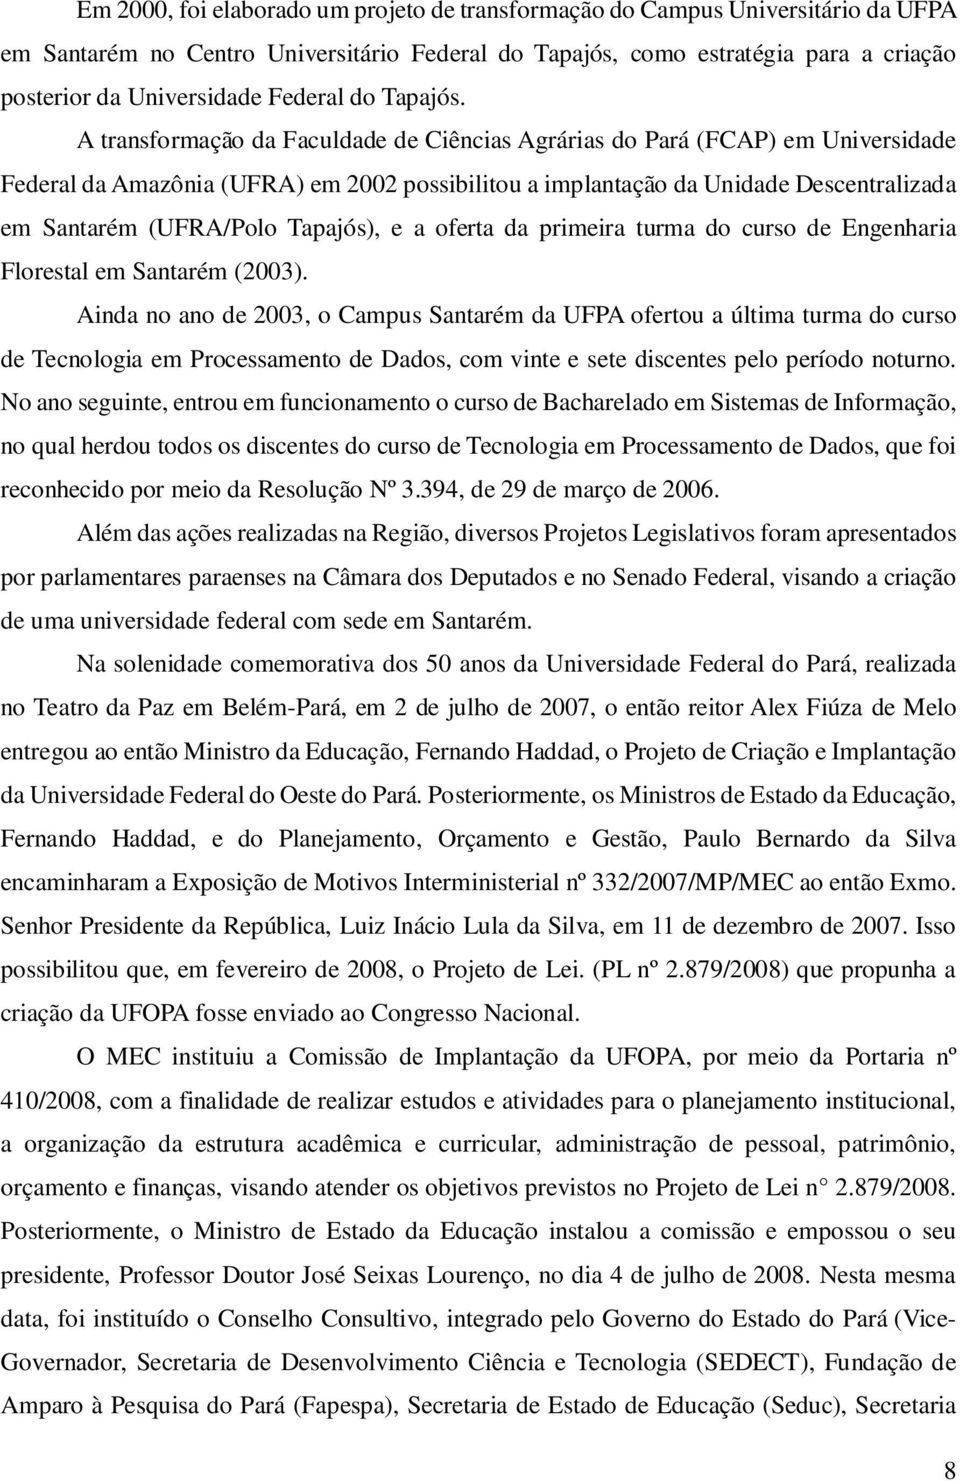 A transformação da Faculdade de Ciências Agrárias do Pará (FCAP) em Universidade Federal da Amazônia (UFRA) em 2002 possibilitou a implantação da Unidade Descentralizada em Santarém (UFRA/Polo